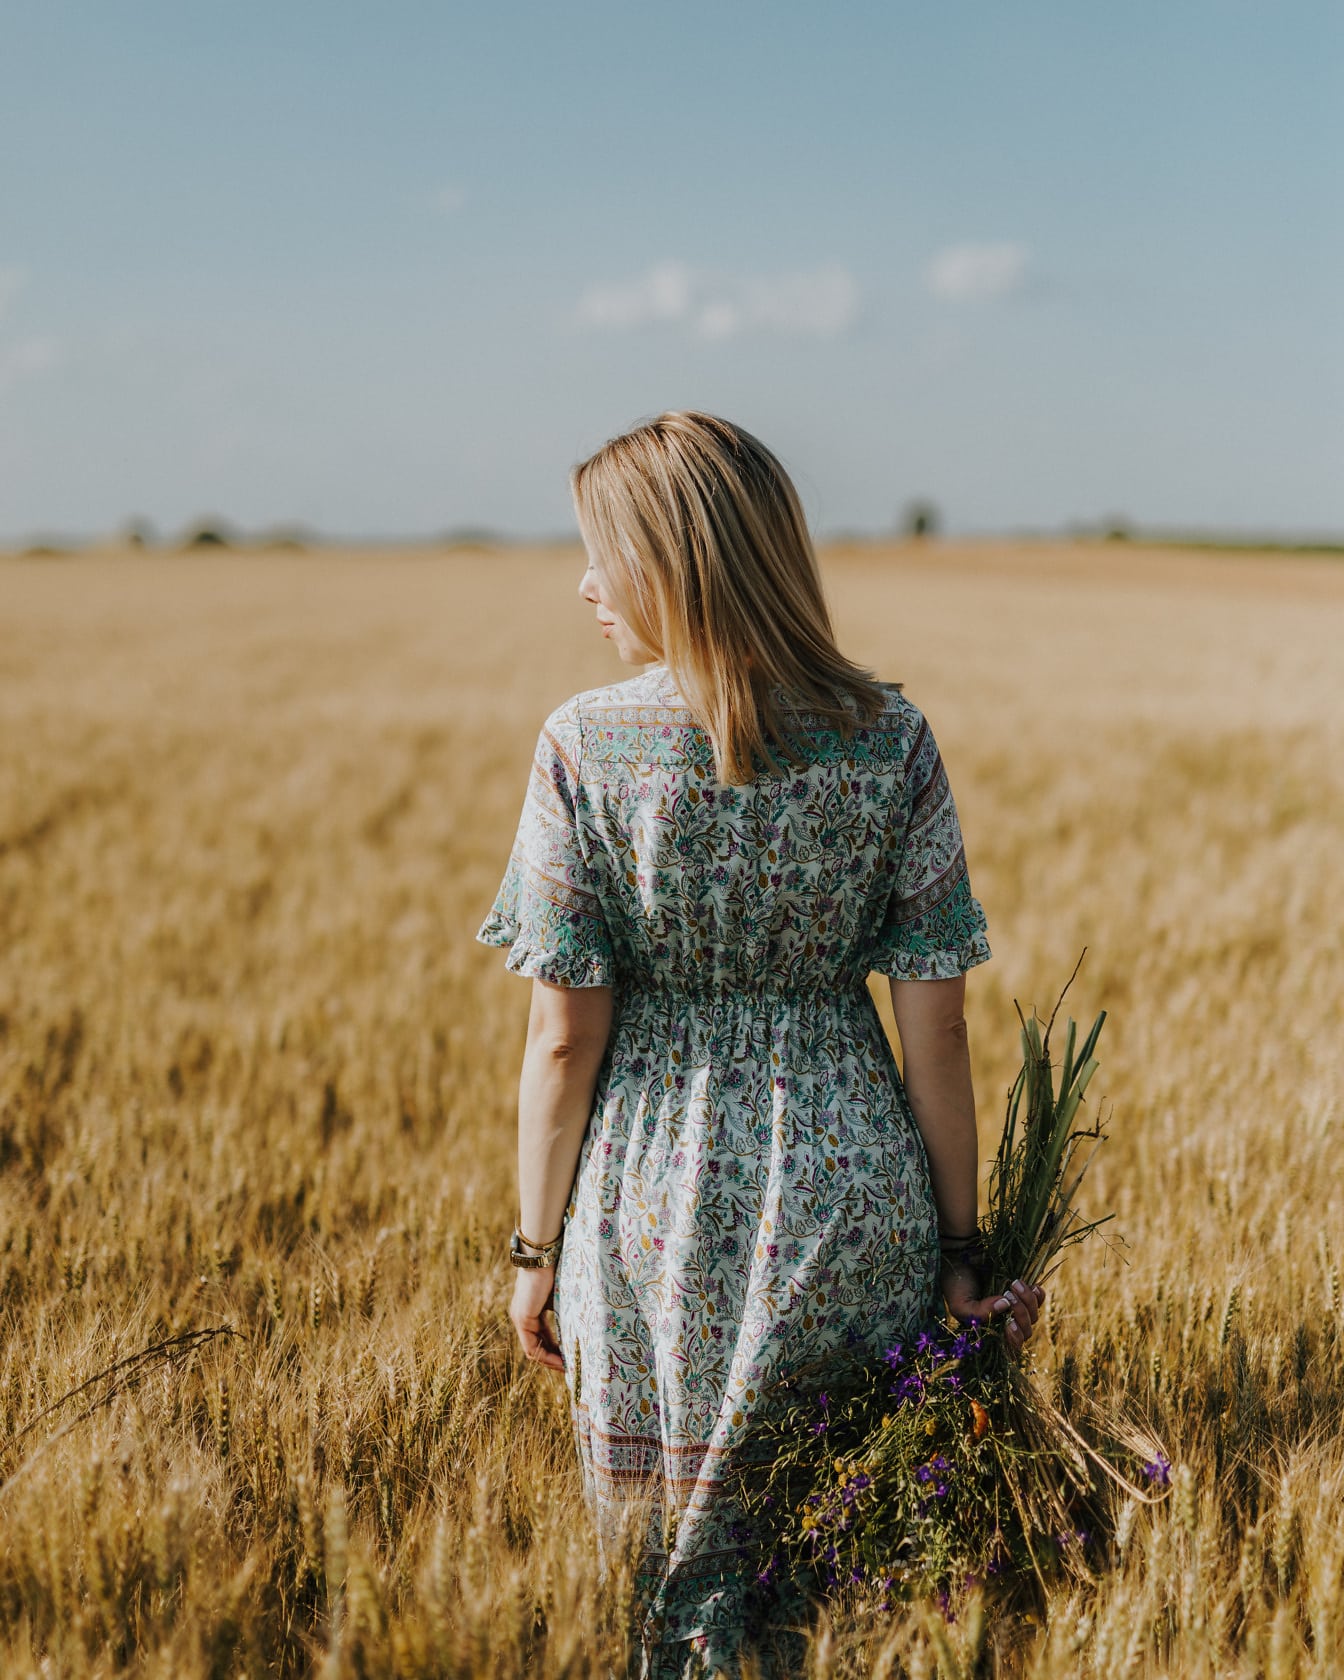 Blondynka w tradycyjnym rustykalnym stroju pozuje na polu pszenicy